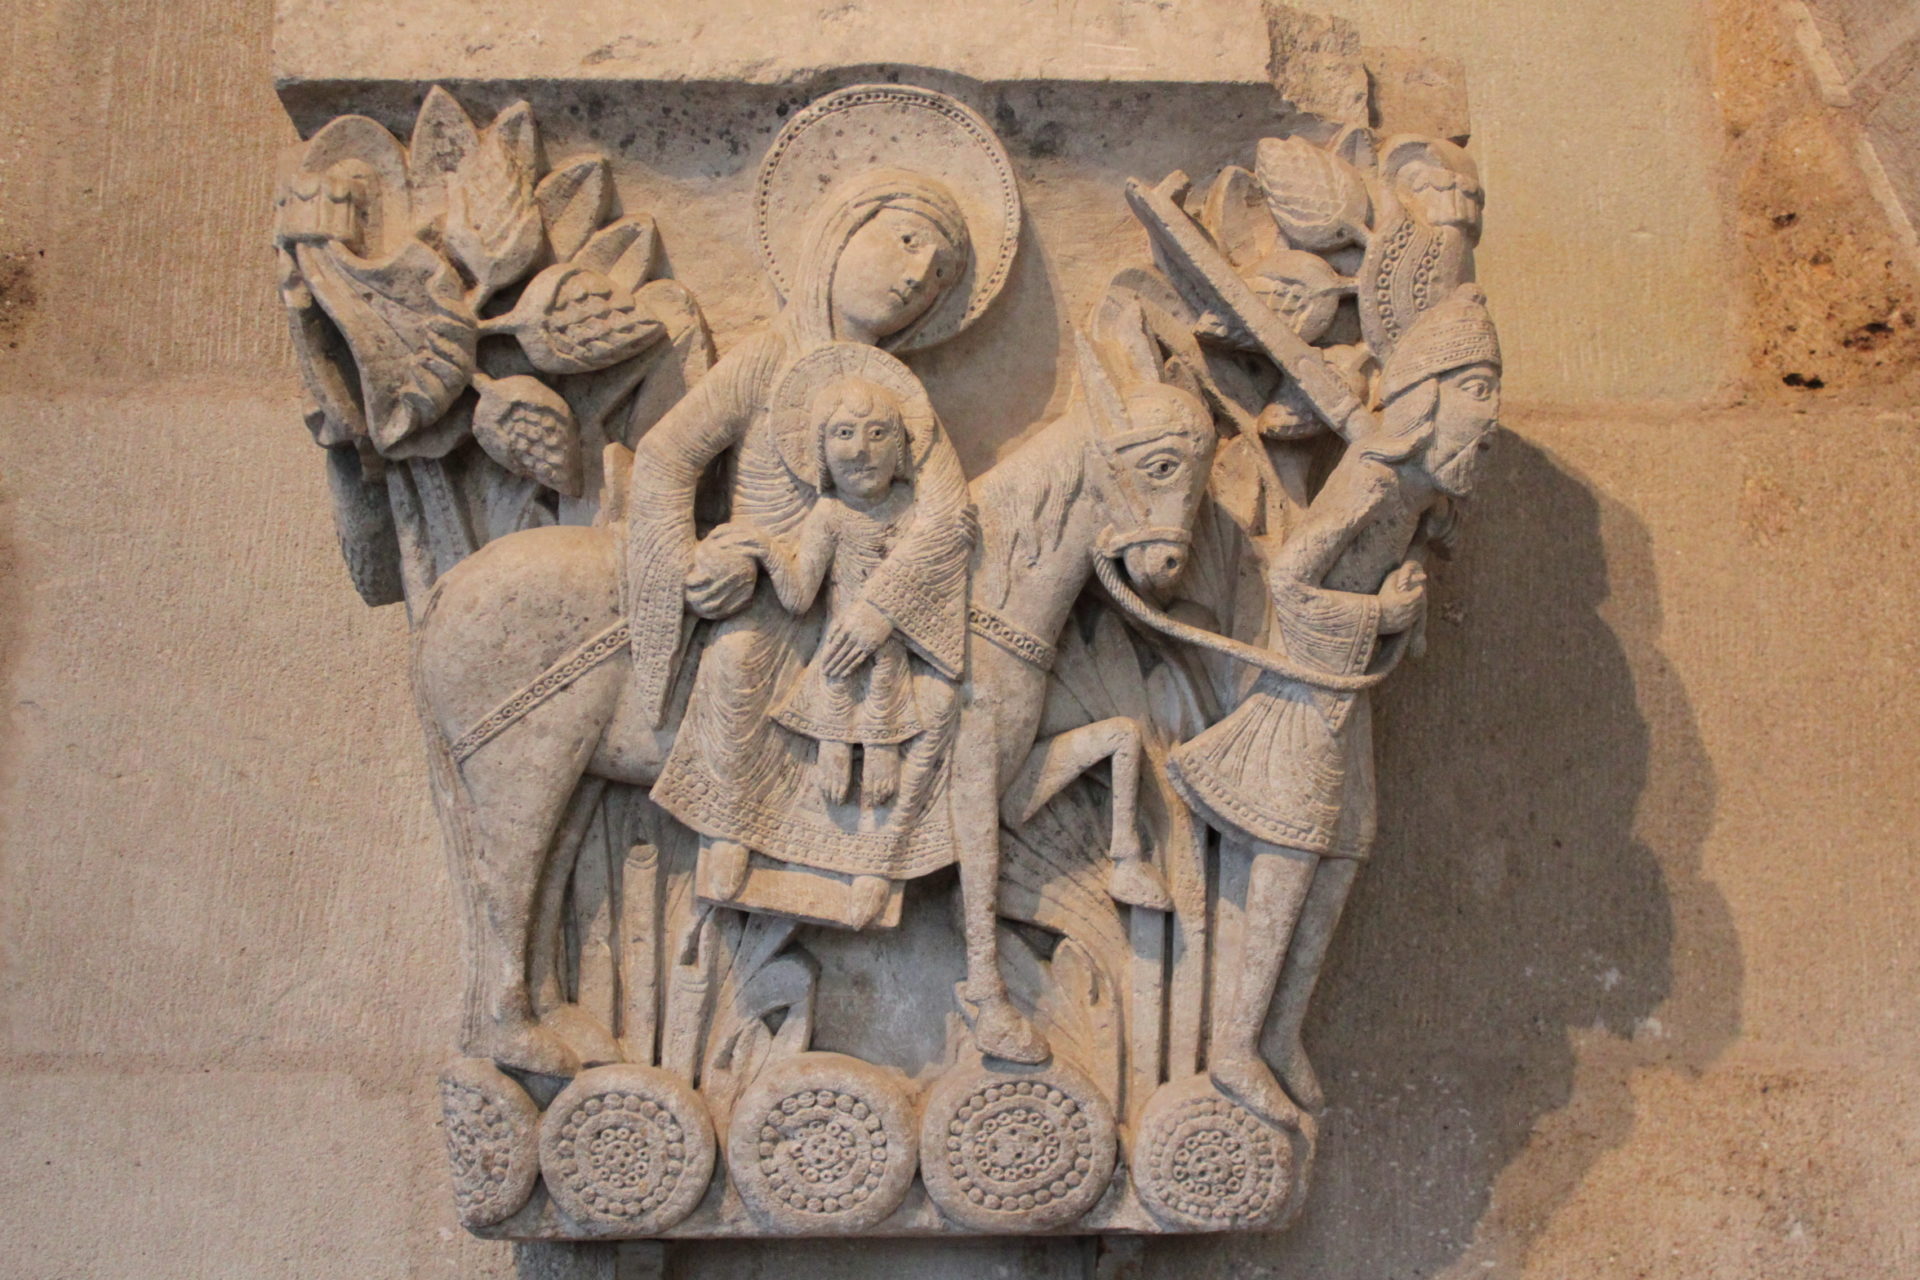 Chapiteau de la salle capitulaire de la cathédrale Saint-Lazare d'Autun en Bourgogne
Fuite en Egypte